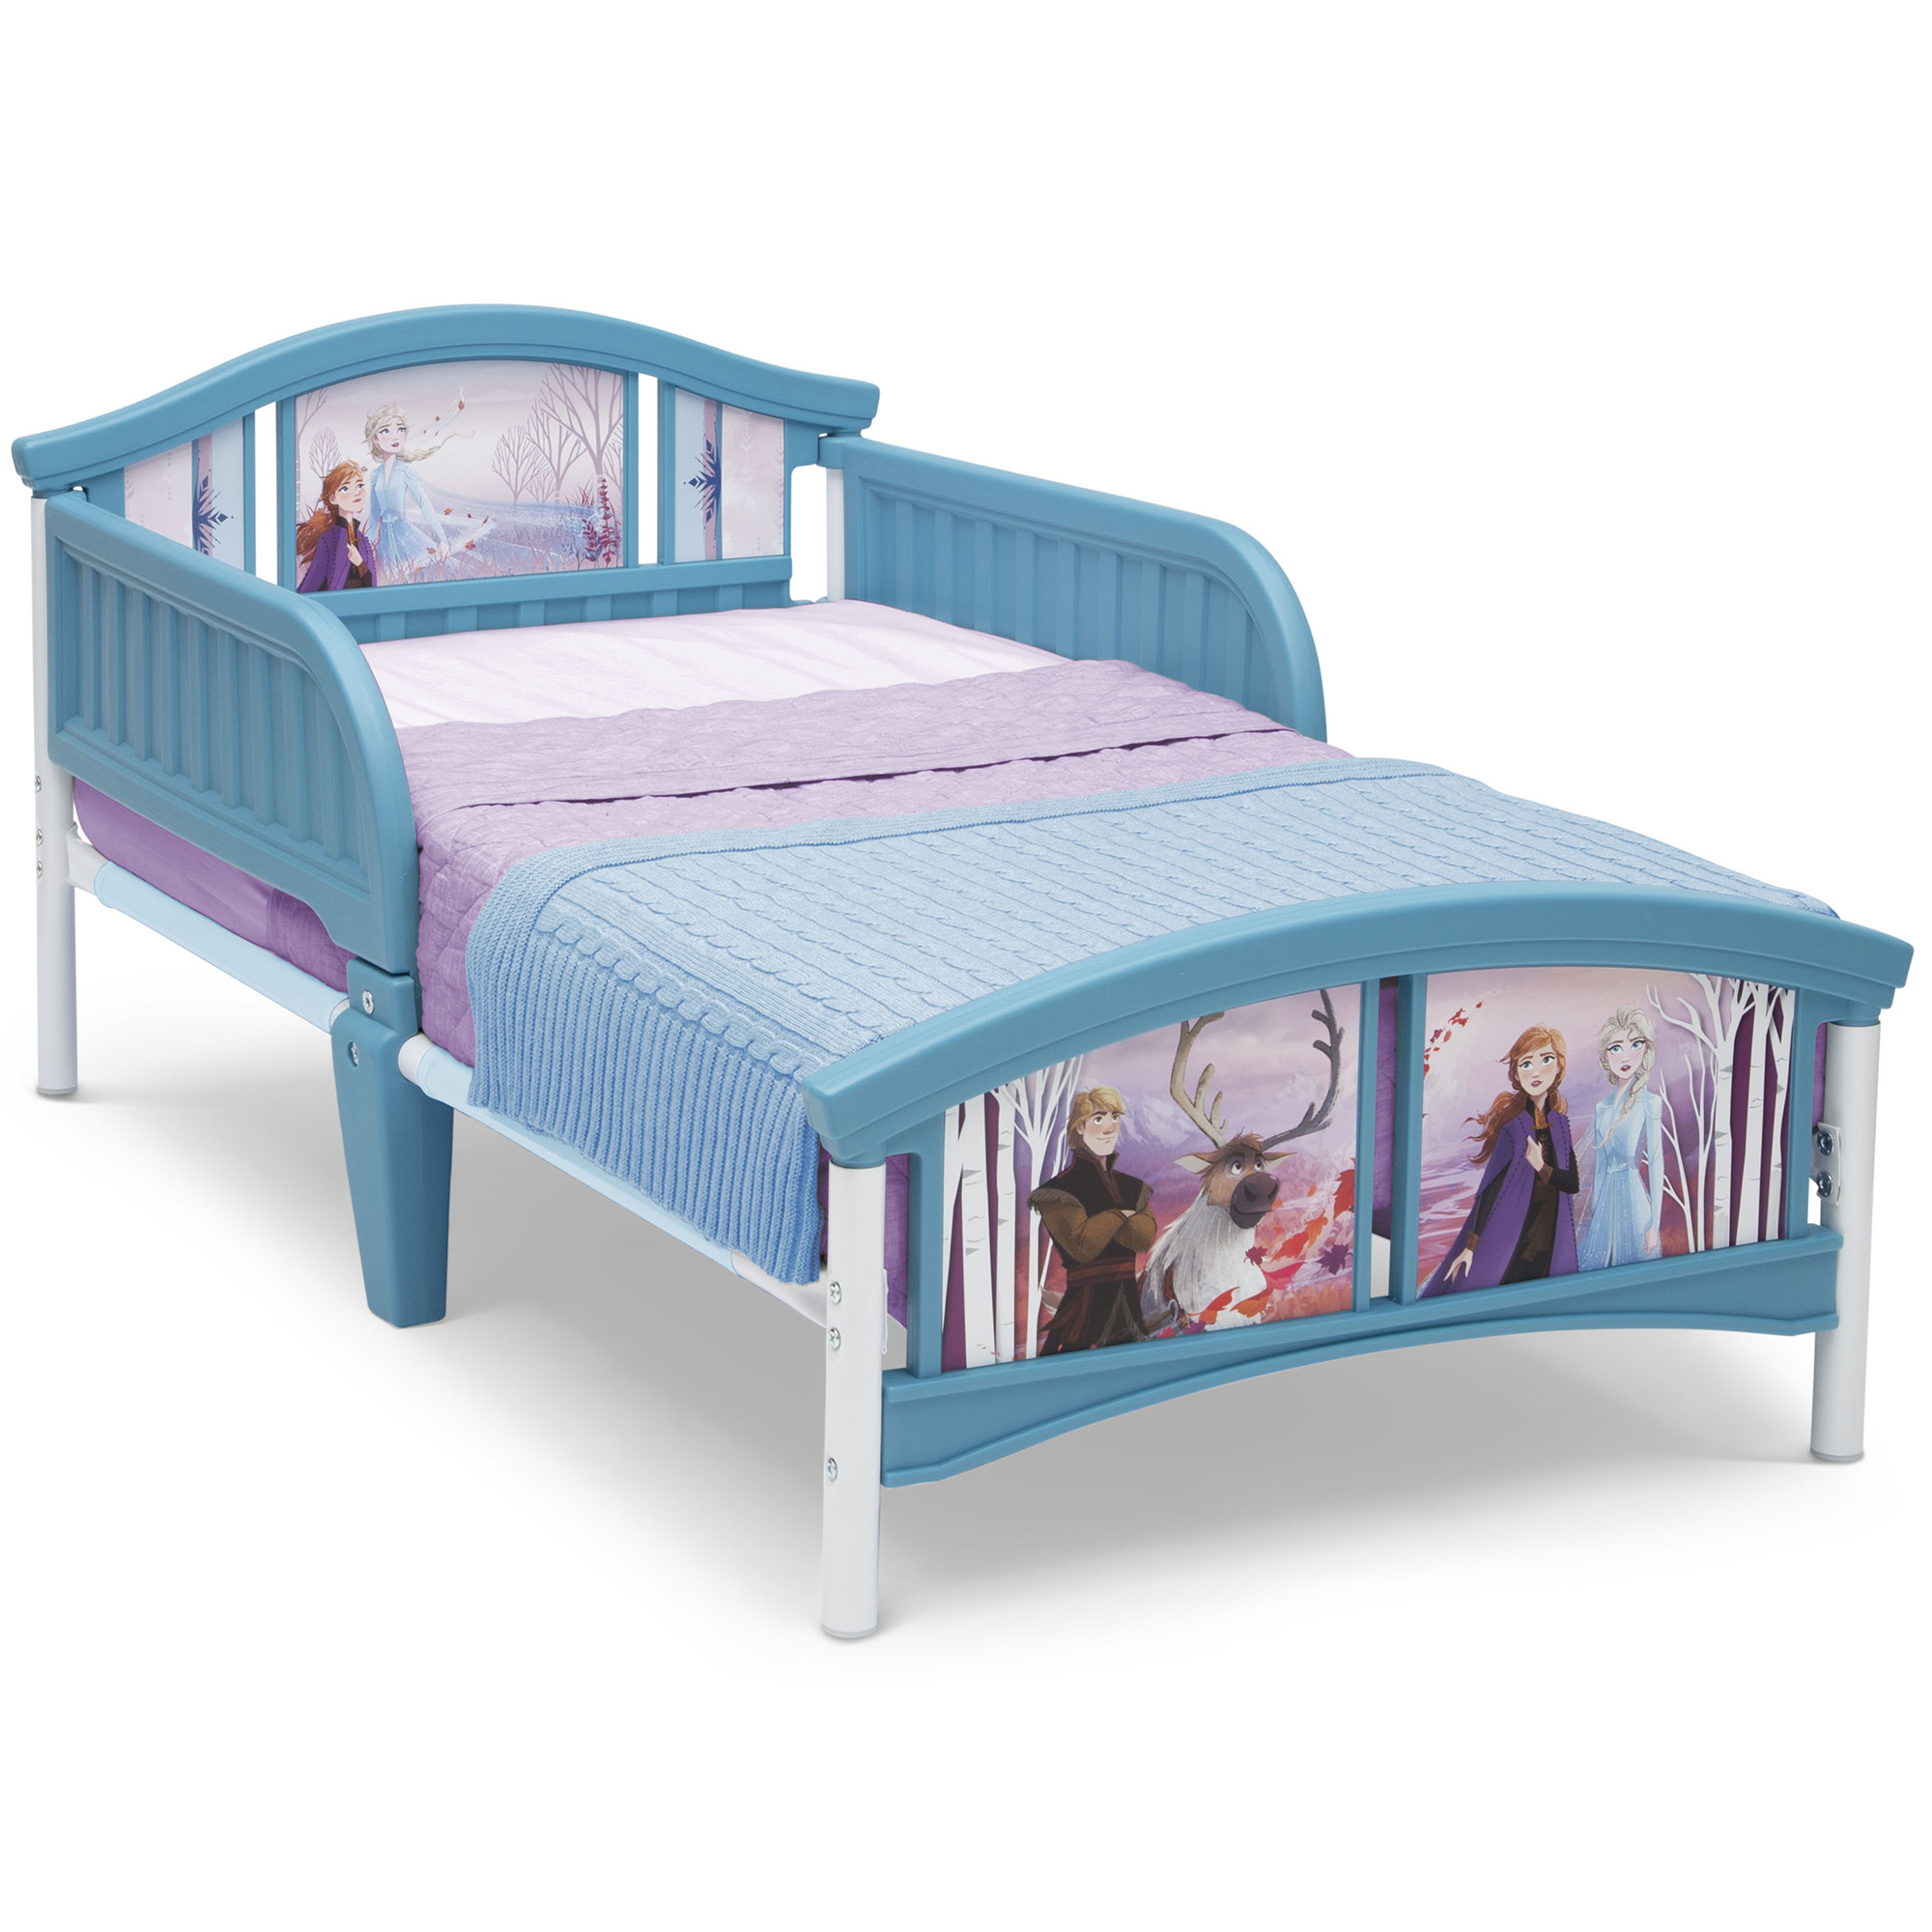 Disney Frozen II Plastic Toddler Bed by Delta Children - image 1 of 6